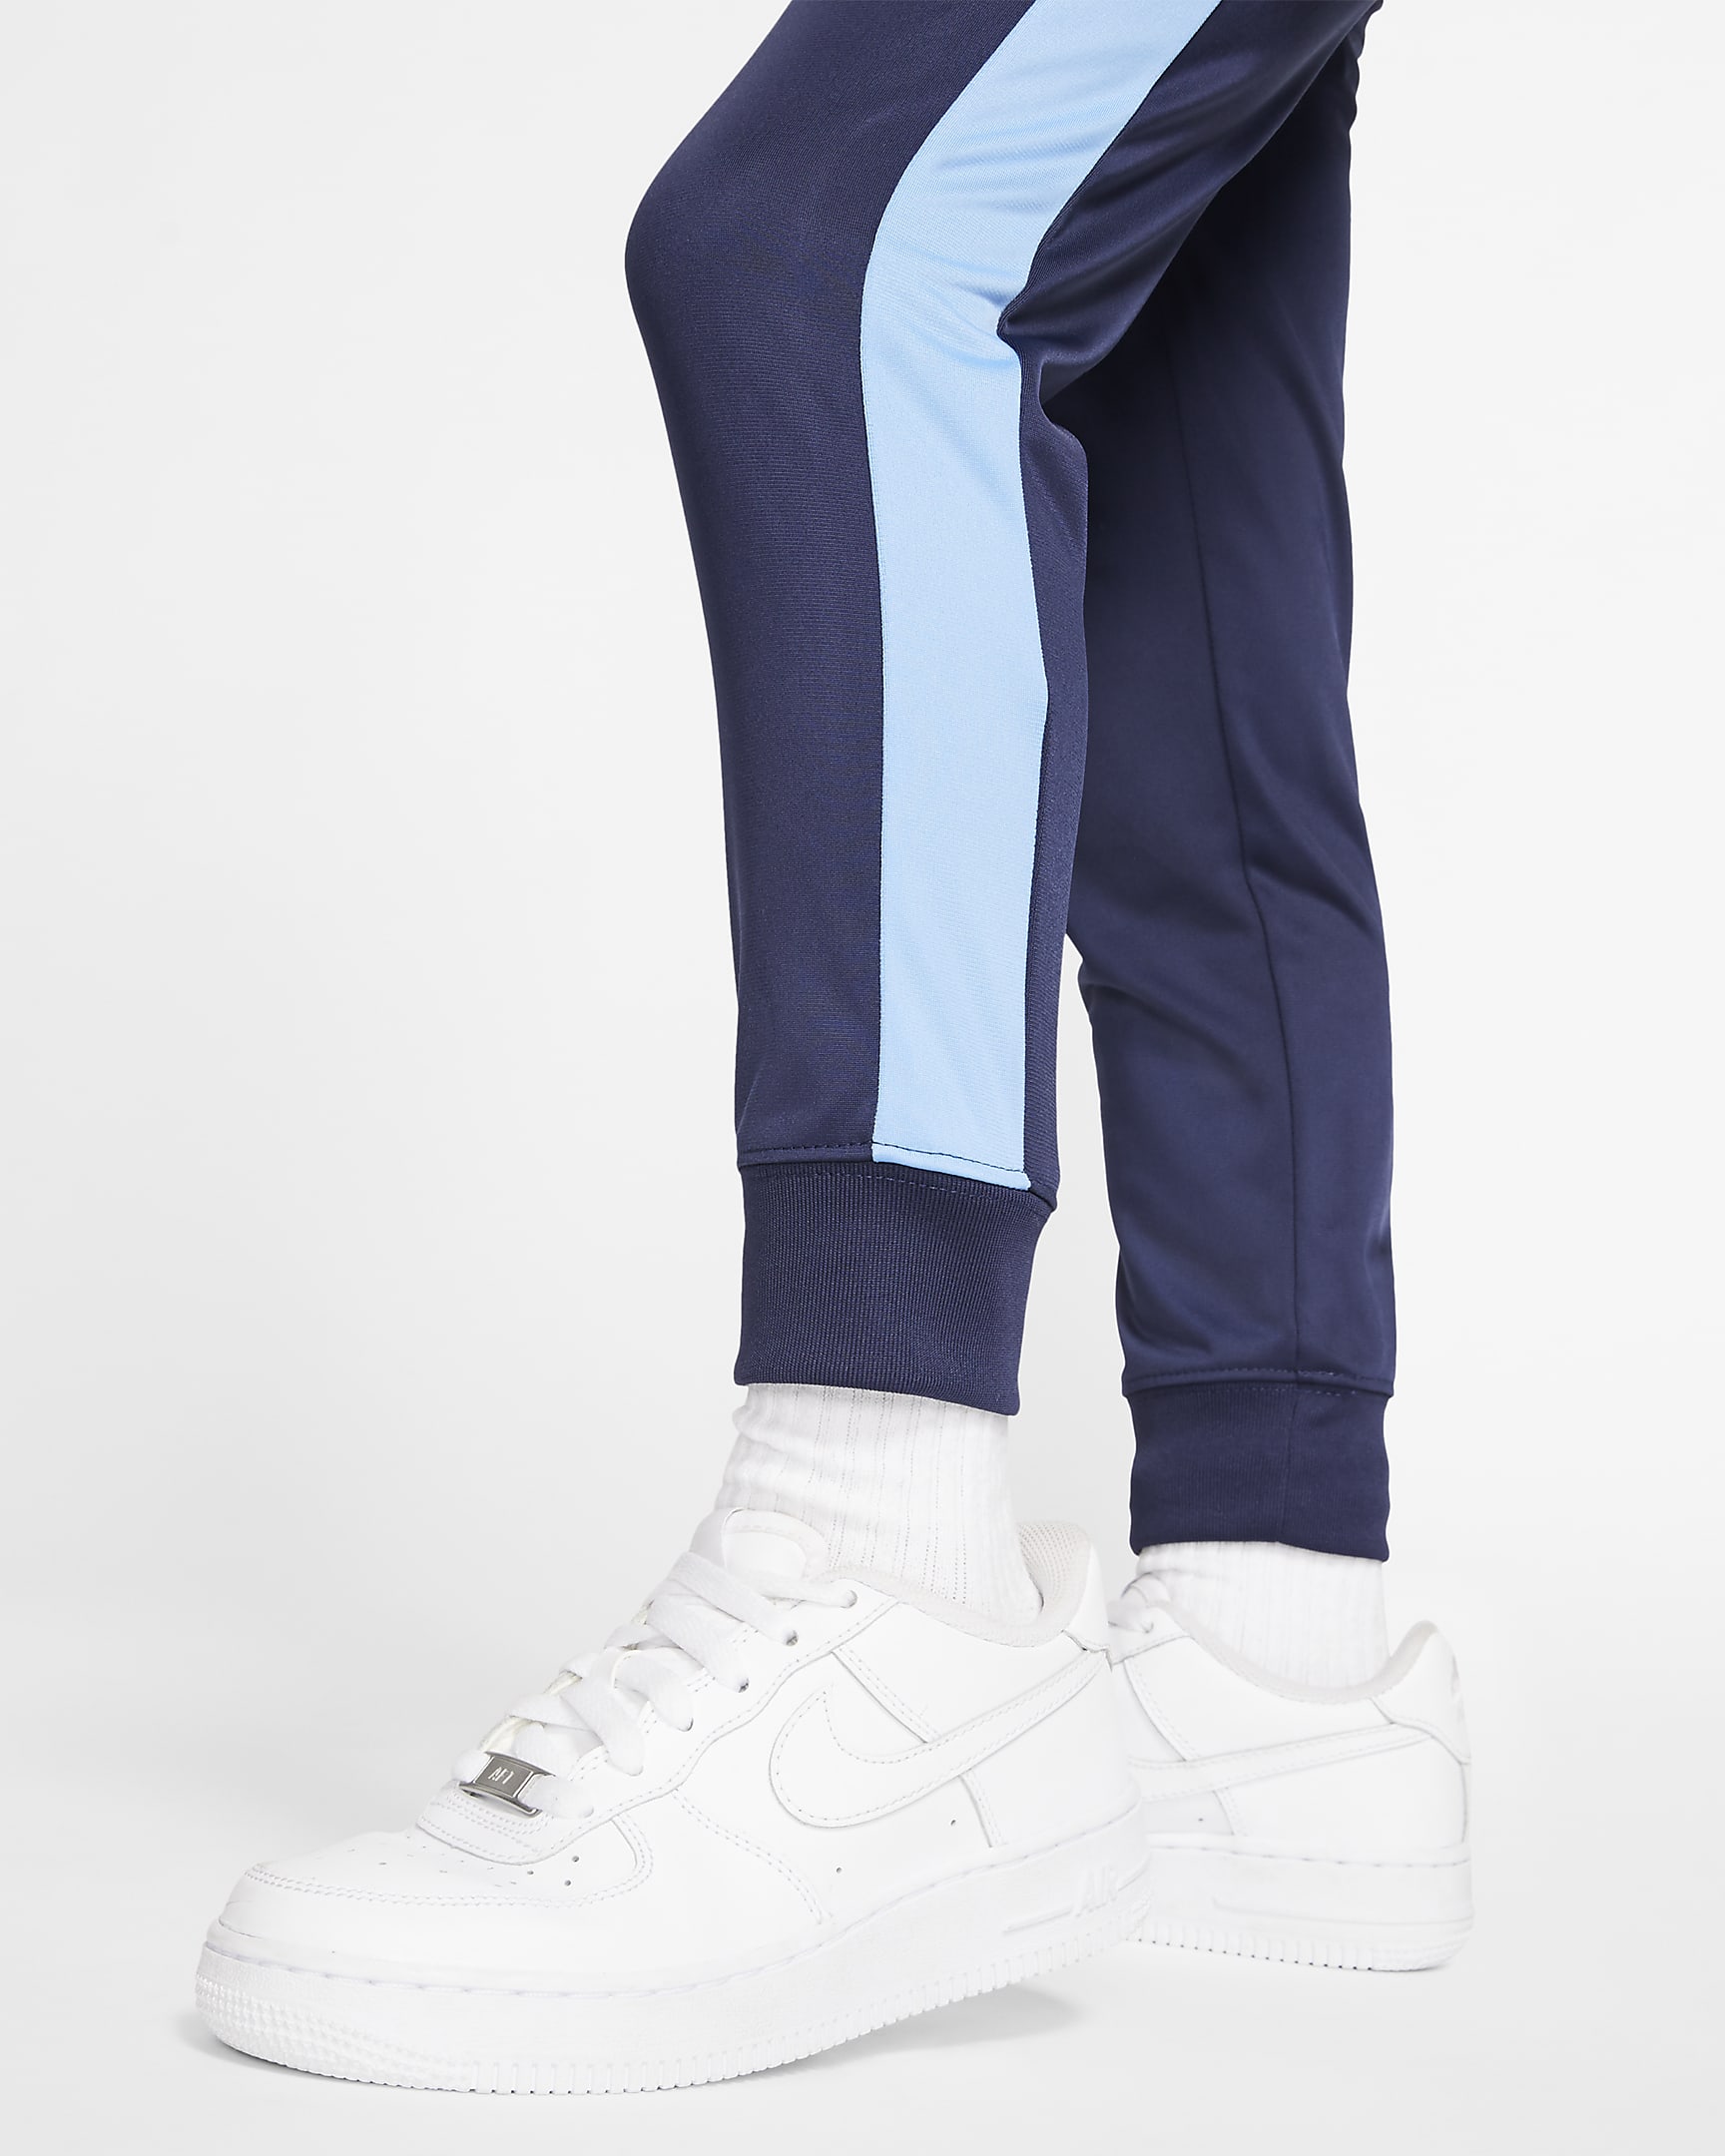 Nike Little Kids' Jacket and Pants Set. Nike.com